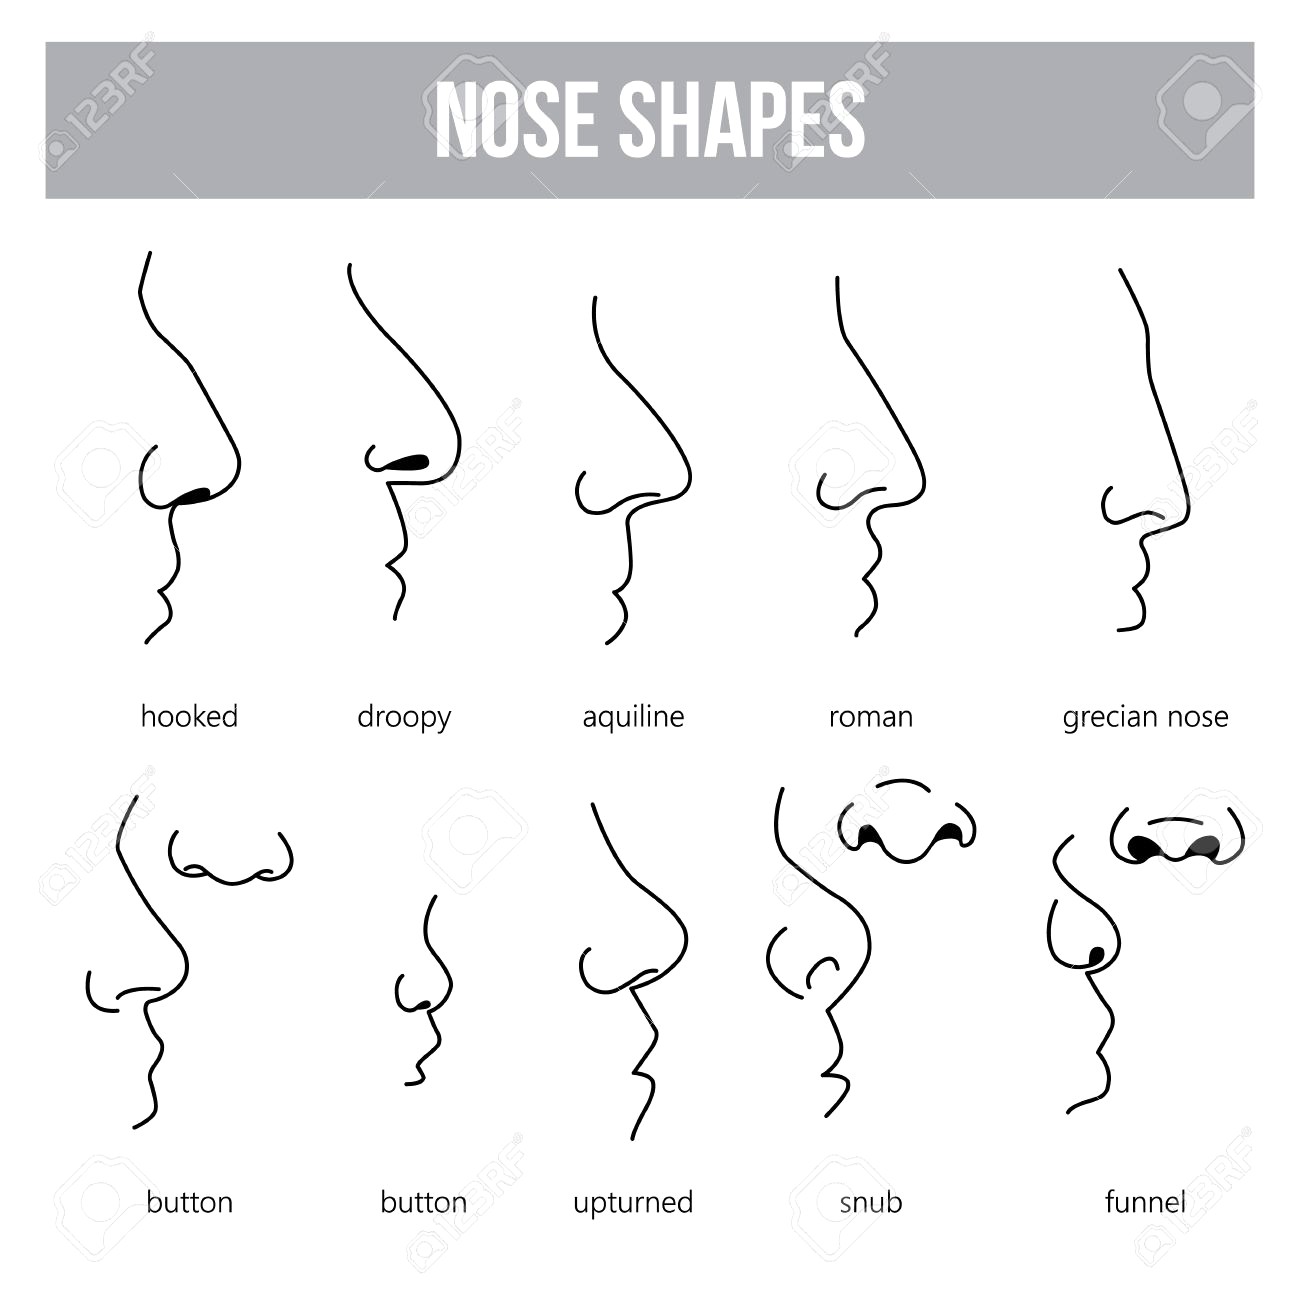 Виды носа на английском